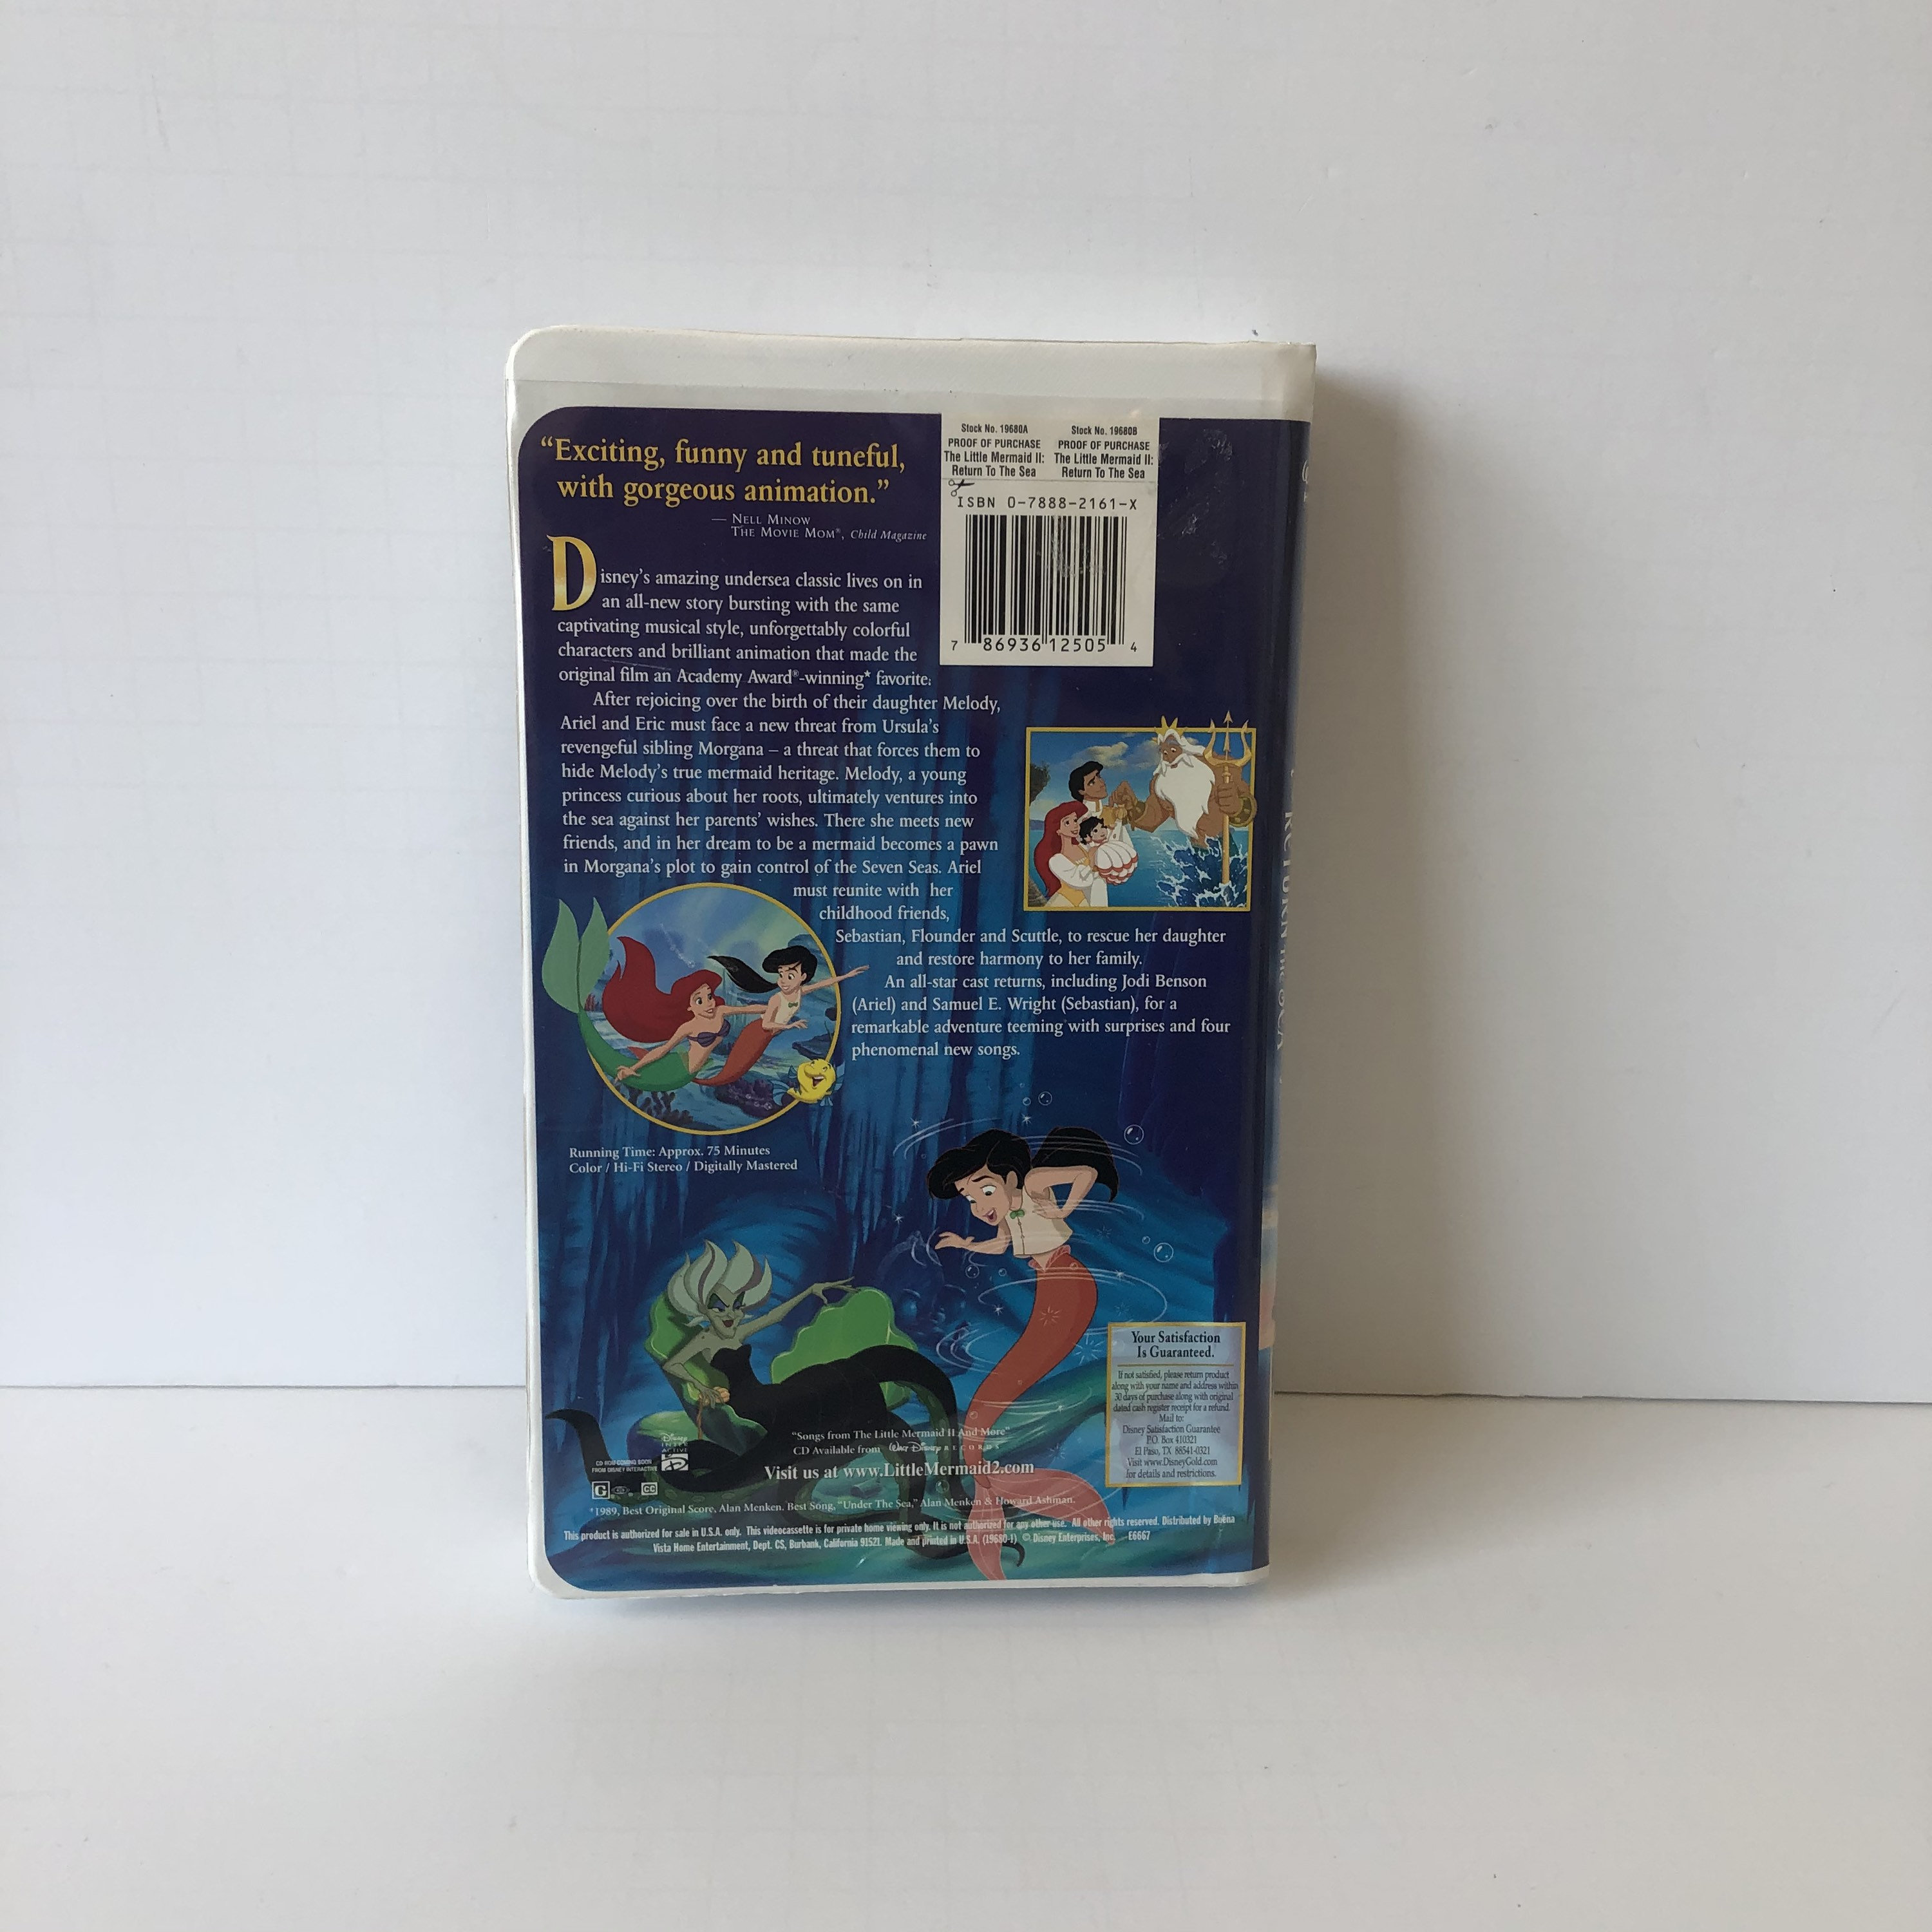 Walt Disney's THE LITTLE MERMAID II: Return to the Sea - VHS Code